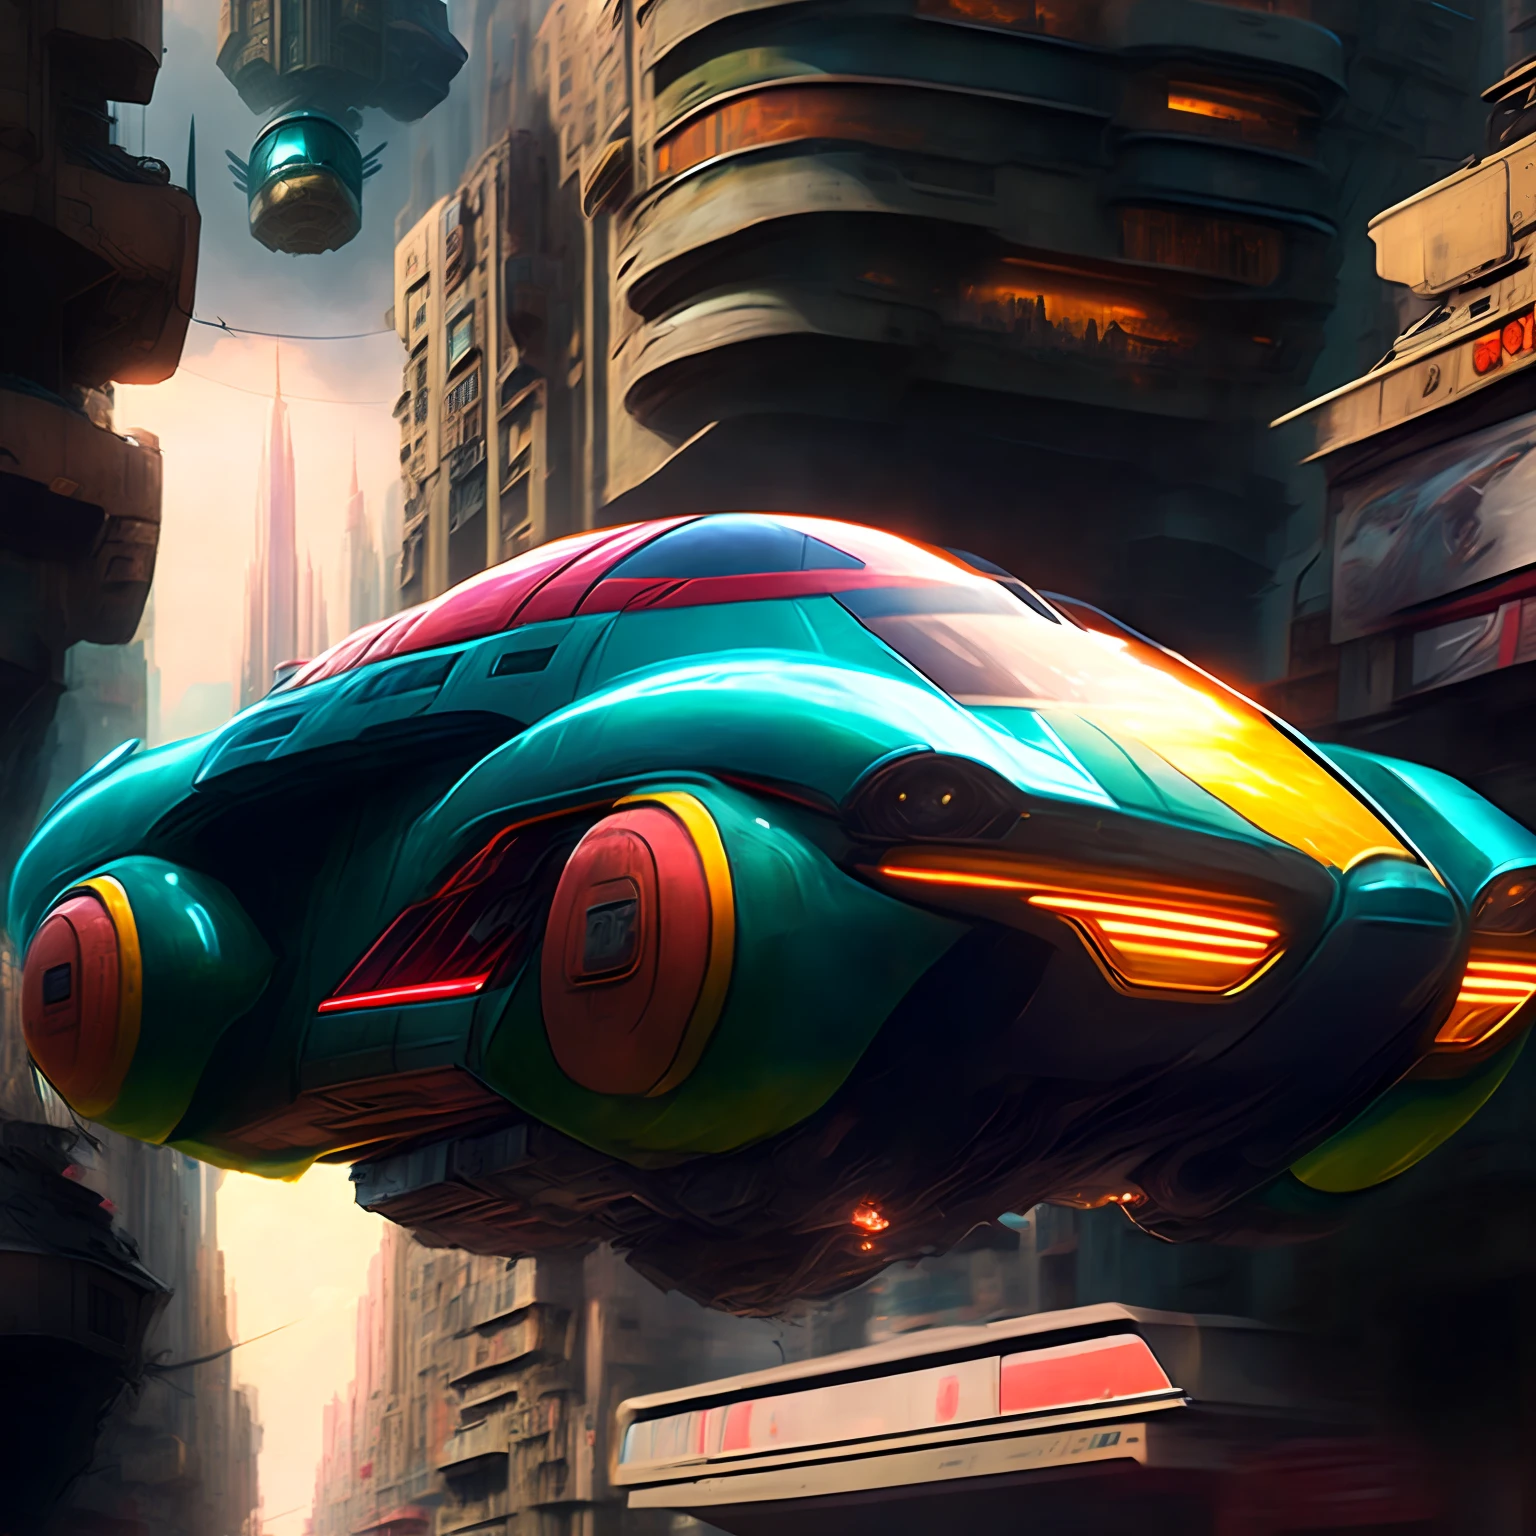 Hover Car en Mega-City One, Juez Dredd, Realista, cinematográfico